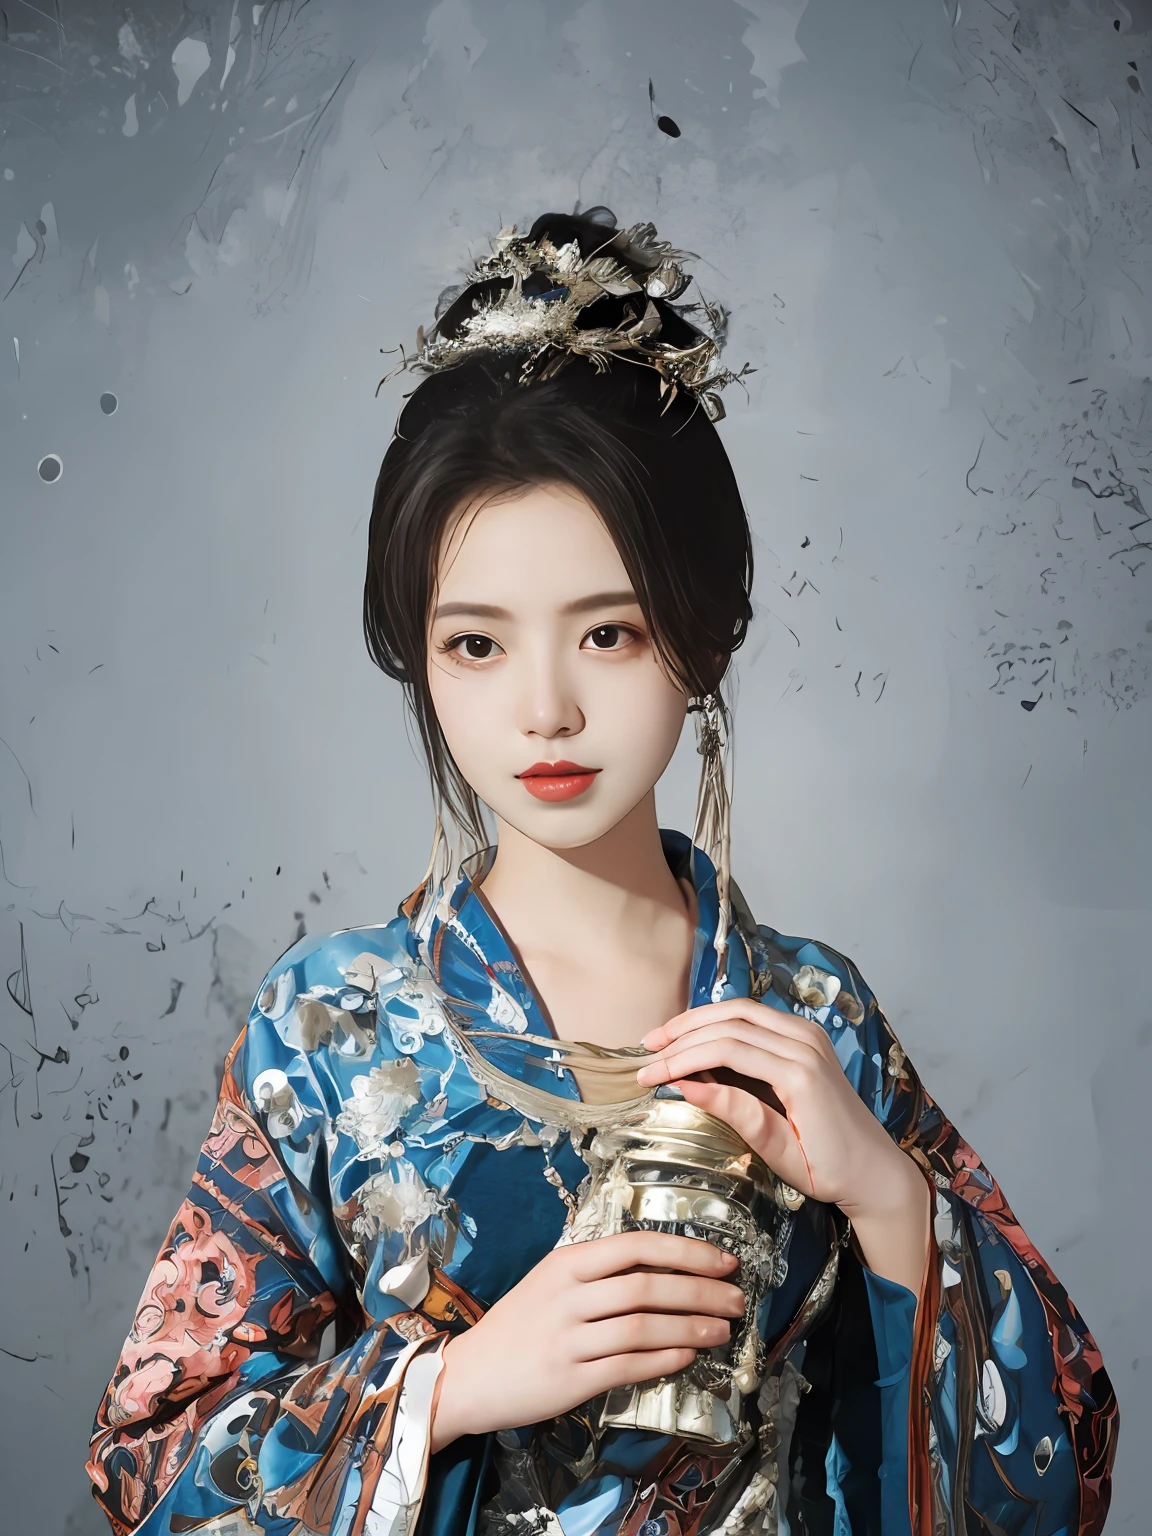 중국 전통 의상을 입은 여성의 그림, 애니메이션 미학의 스타일로, 32k어드, 눈 깜짝할 사이에 놓칠 수 있는 디테일, 아름다운, 애니메이션에서 영감을 받은 캐릭터, 베이지와 아쿠아마린, 확대,